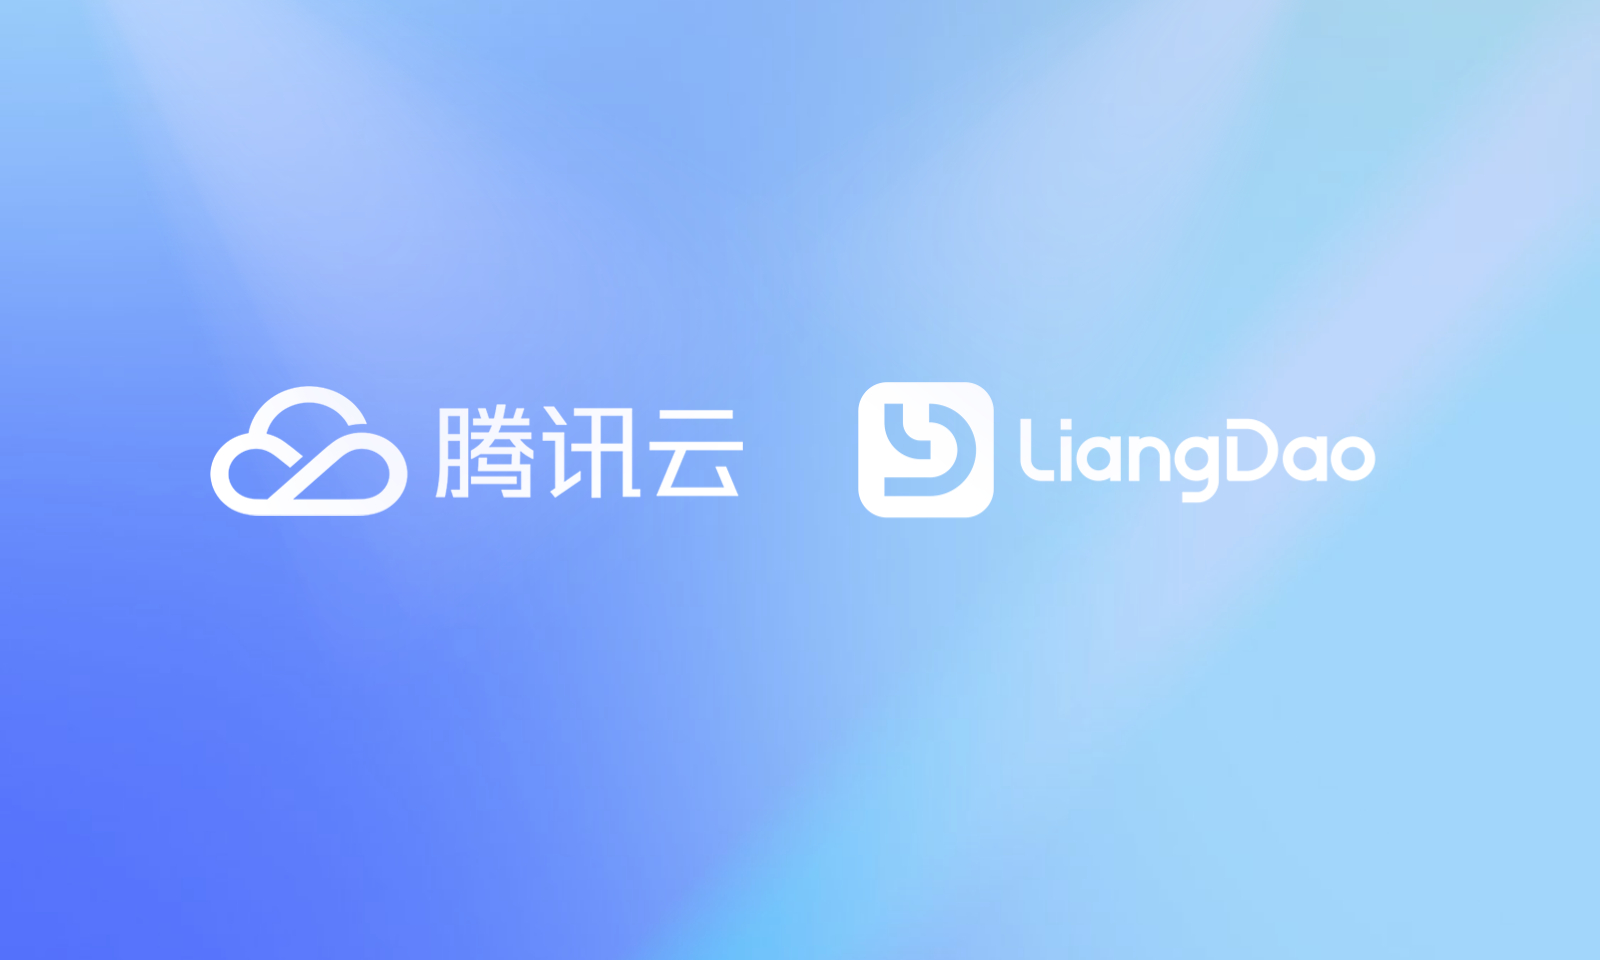 亮道智能-新闻中心-LiangDao has reached a strategic cooperation with Tencent Cloud to jointly develop an integrated data solution